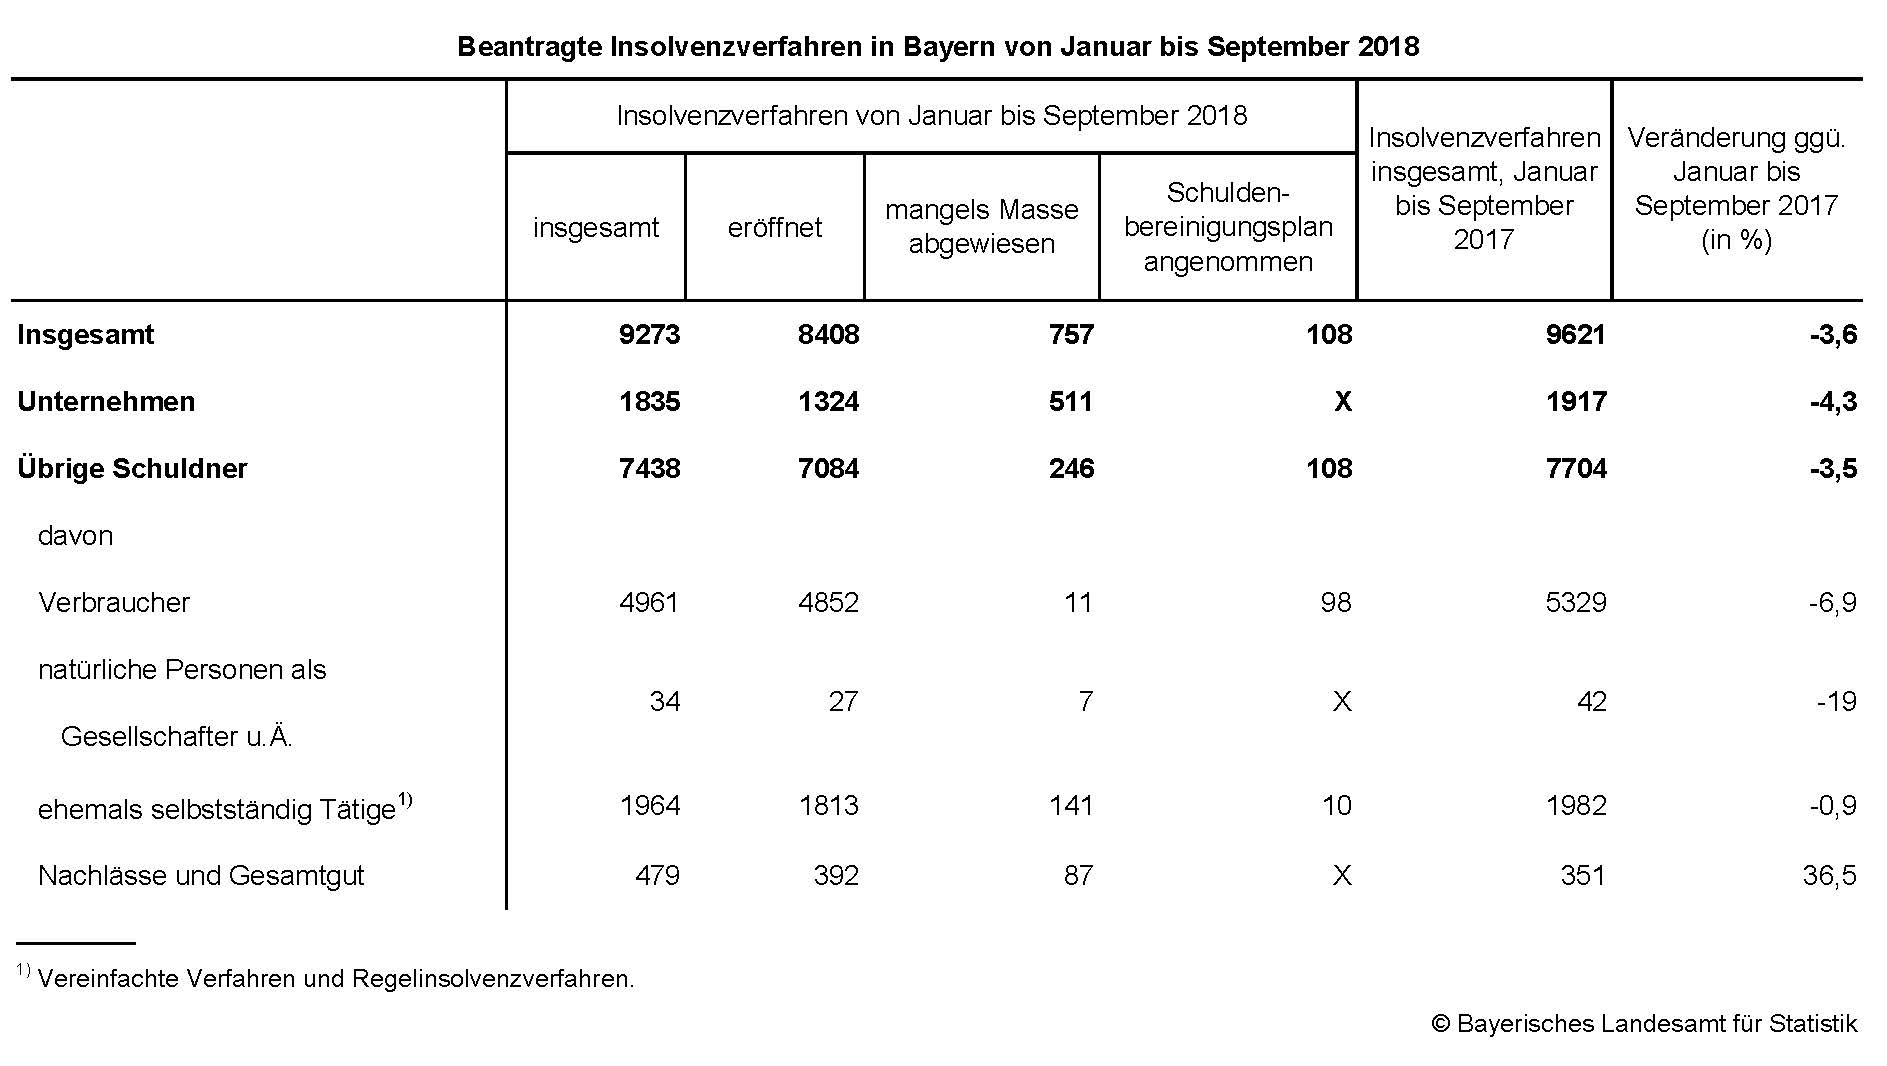 Beantragte Insolvenzverfahren in Bayern von Januar bis September 2018